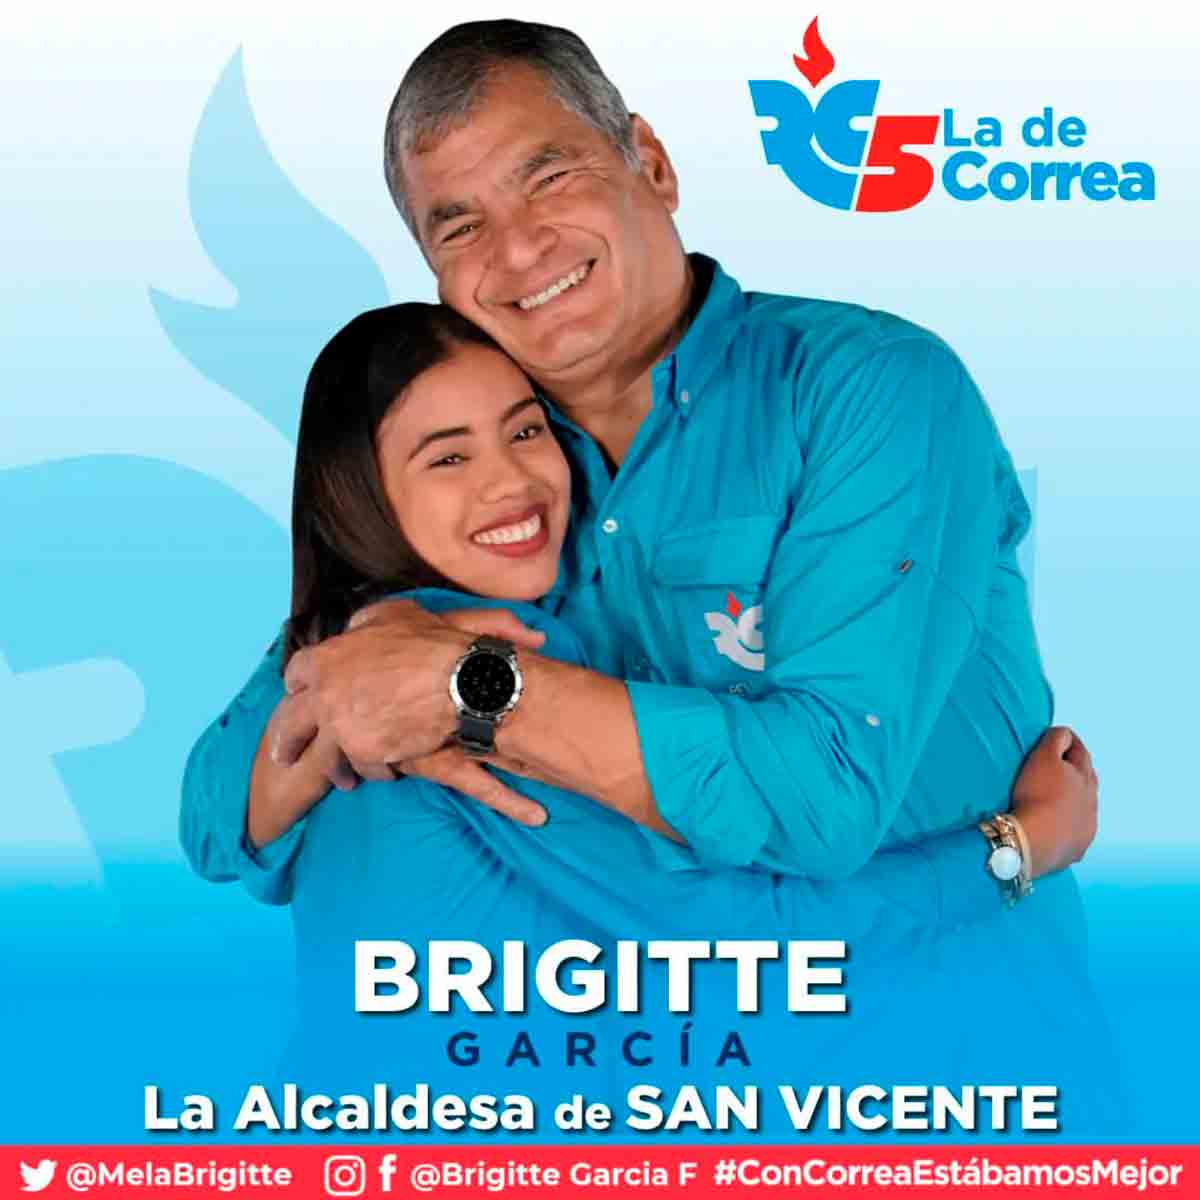 Brigitte García était membre du Parti de la Révolution citoyenne de l'ancien président Rafael Correa